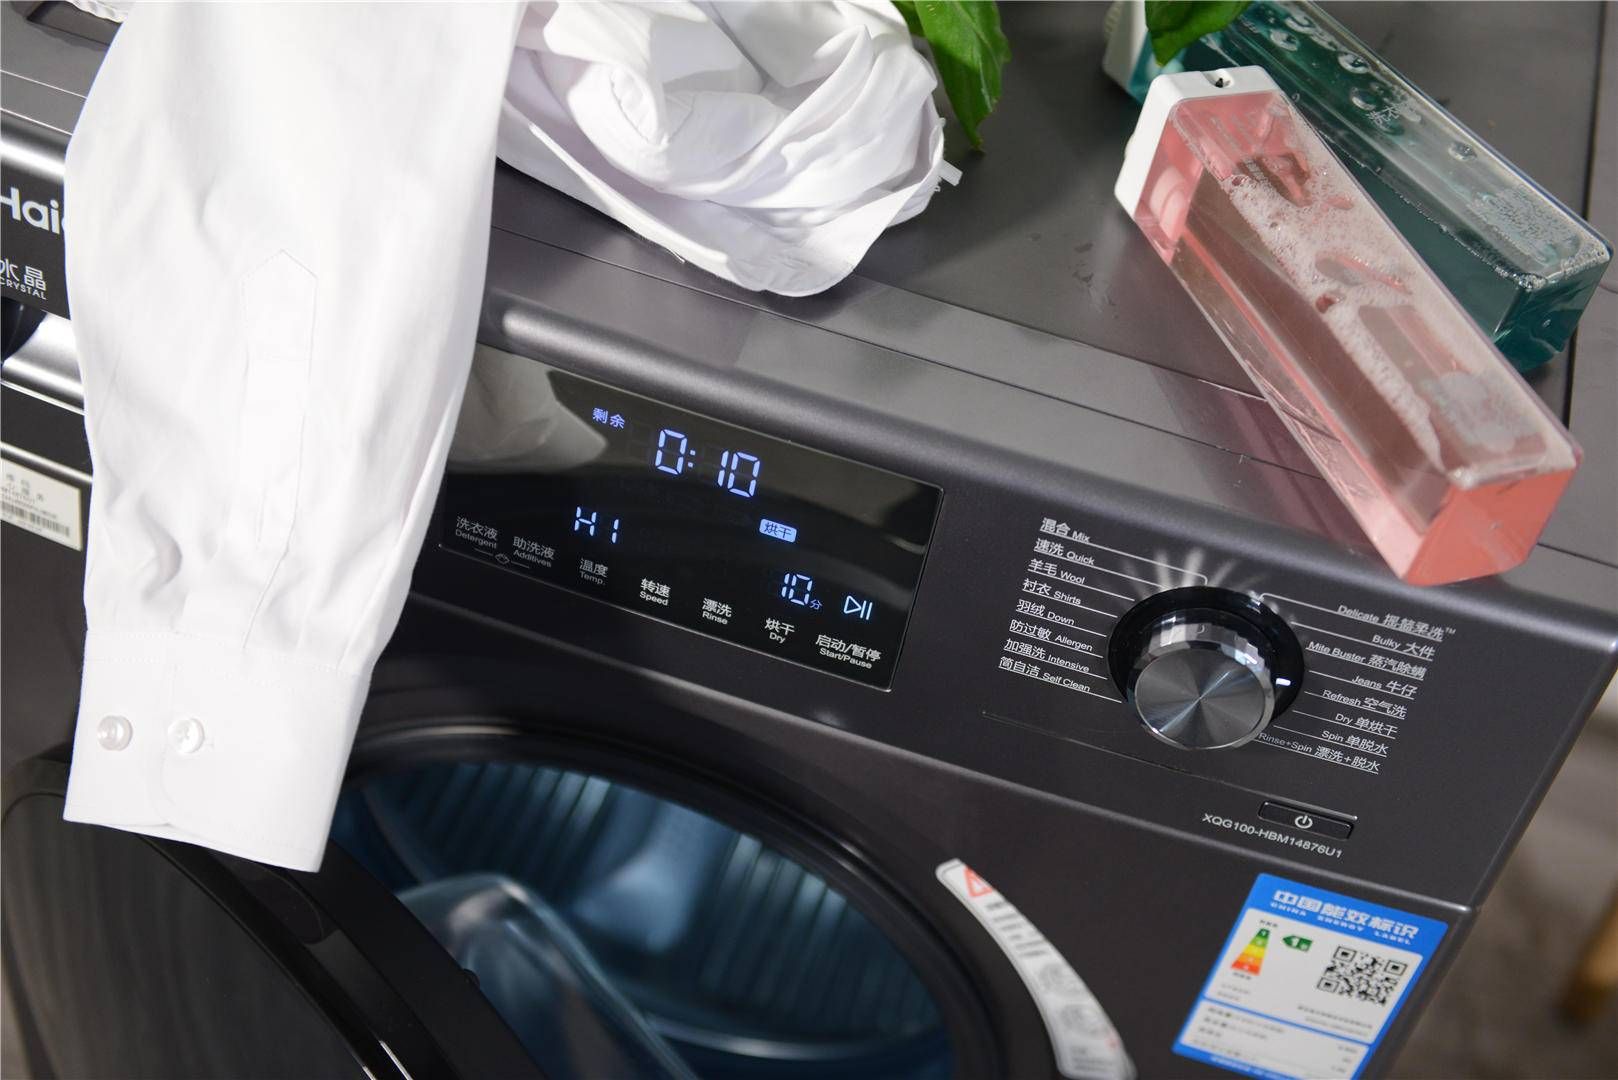 洗衣新，海尔洗衣机，如同打印机一样来精准清洁衣物